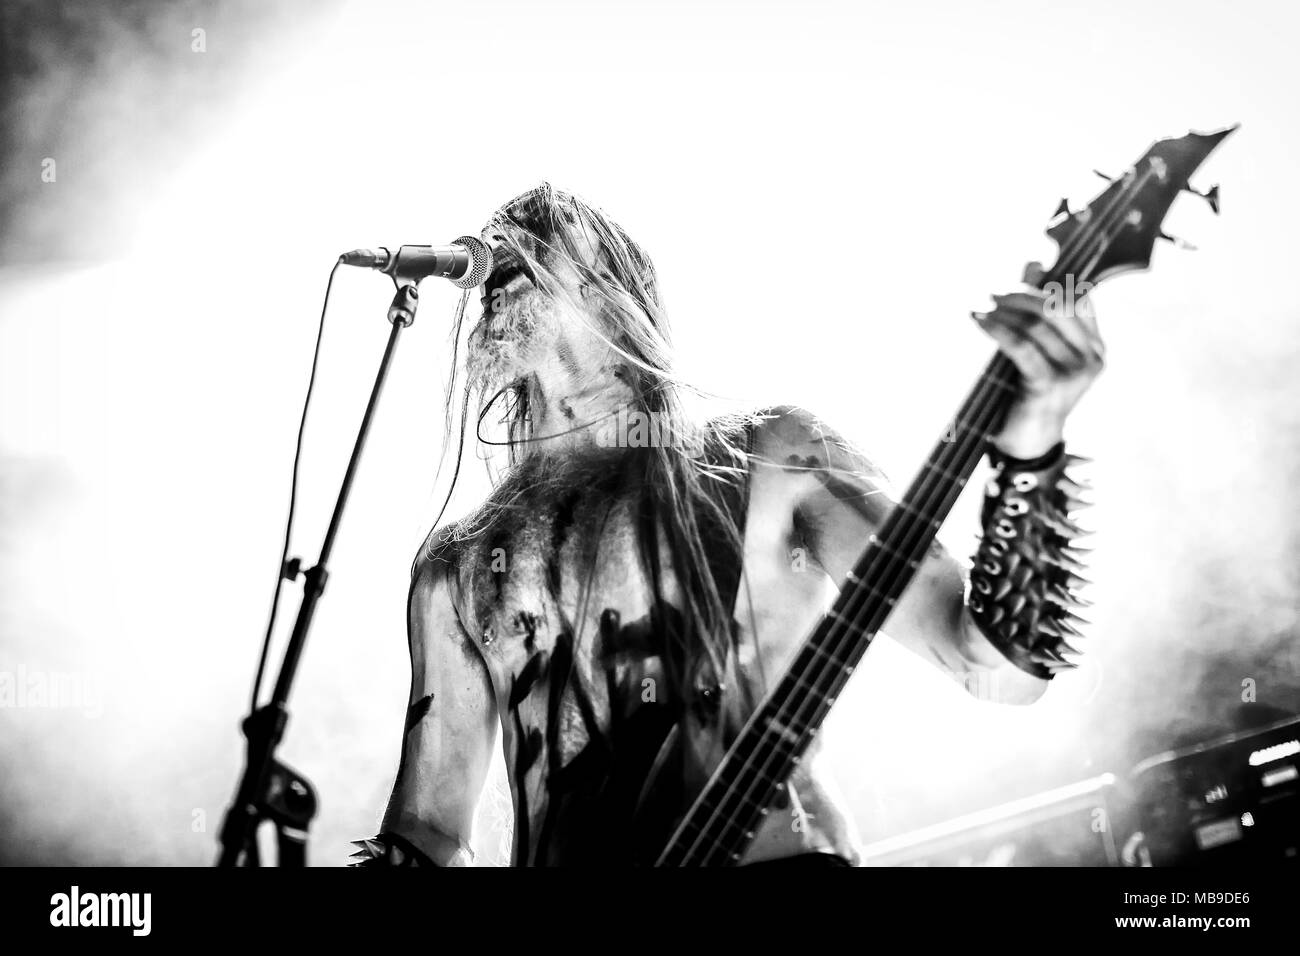 Norwegen, Oslo - April 1, 2018. Der norwegischen Black Metal Band Tsjuder führt ein Live Konzert am Rockefeller während der norwegischen Metal Festival Metal Inferno Festival 2018 in Oslo. Hier Sänger und Bassist Nag ist live auf der Bühne gesehen. (Foto: Gonzales Foto - Terje Dokken). Stockfoto